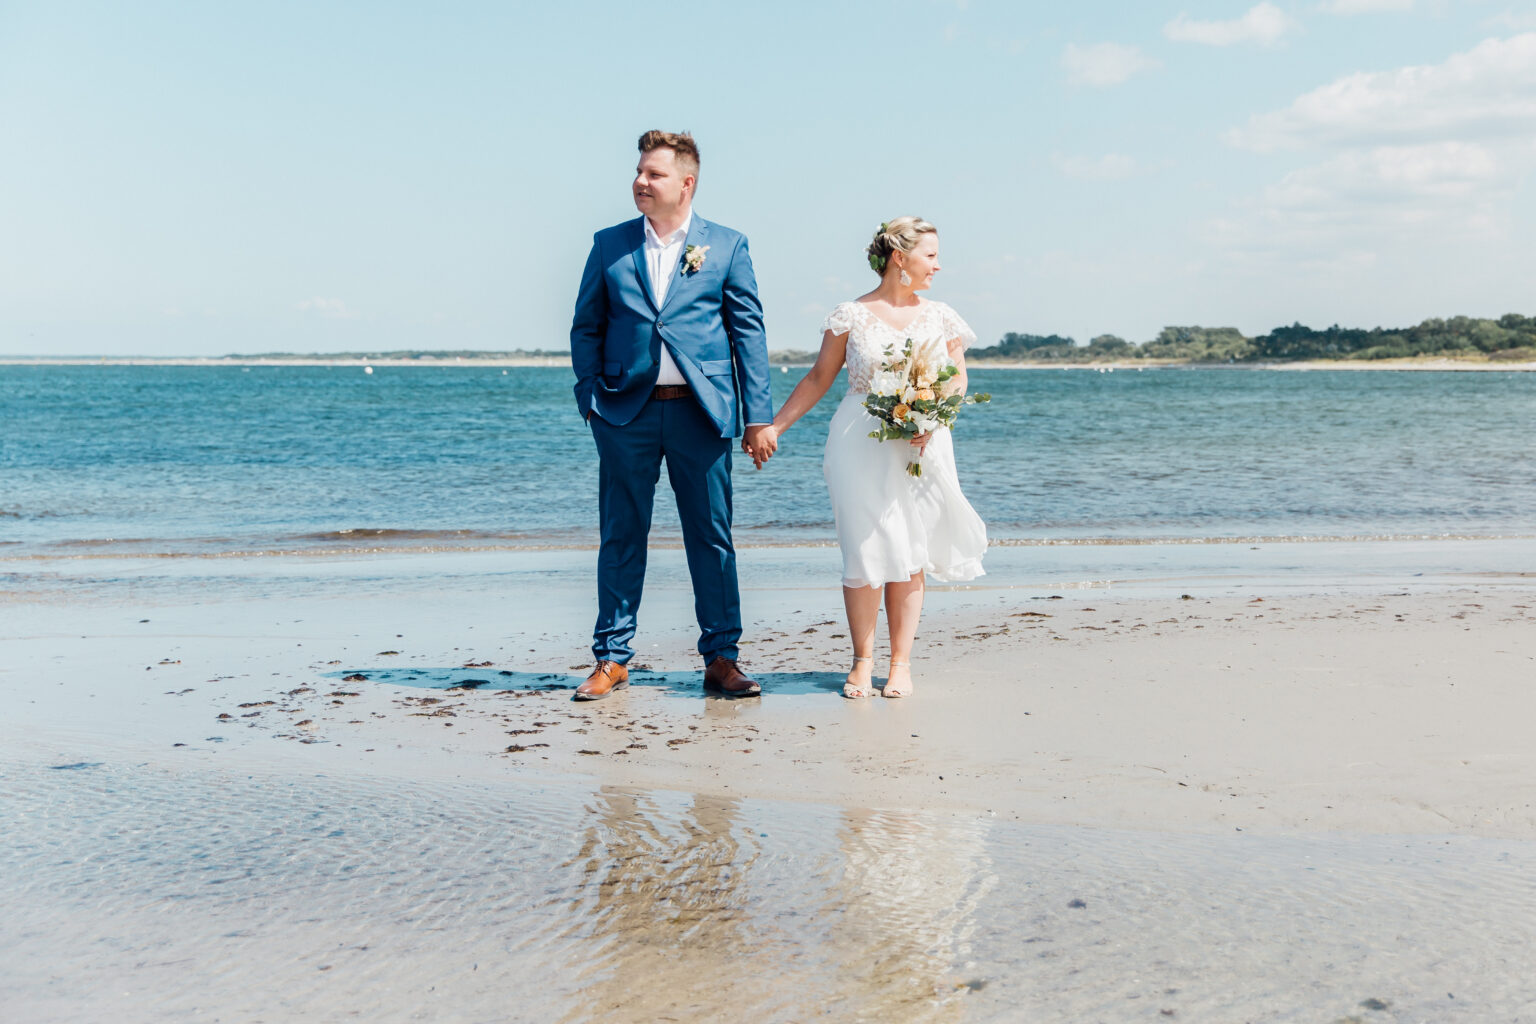 Hochzeitsfotografin aus Rostock bei einer Fotoreportage am Strand.